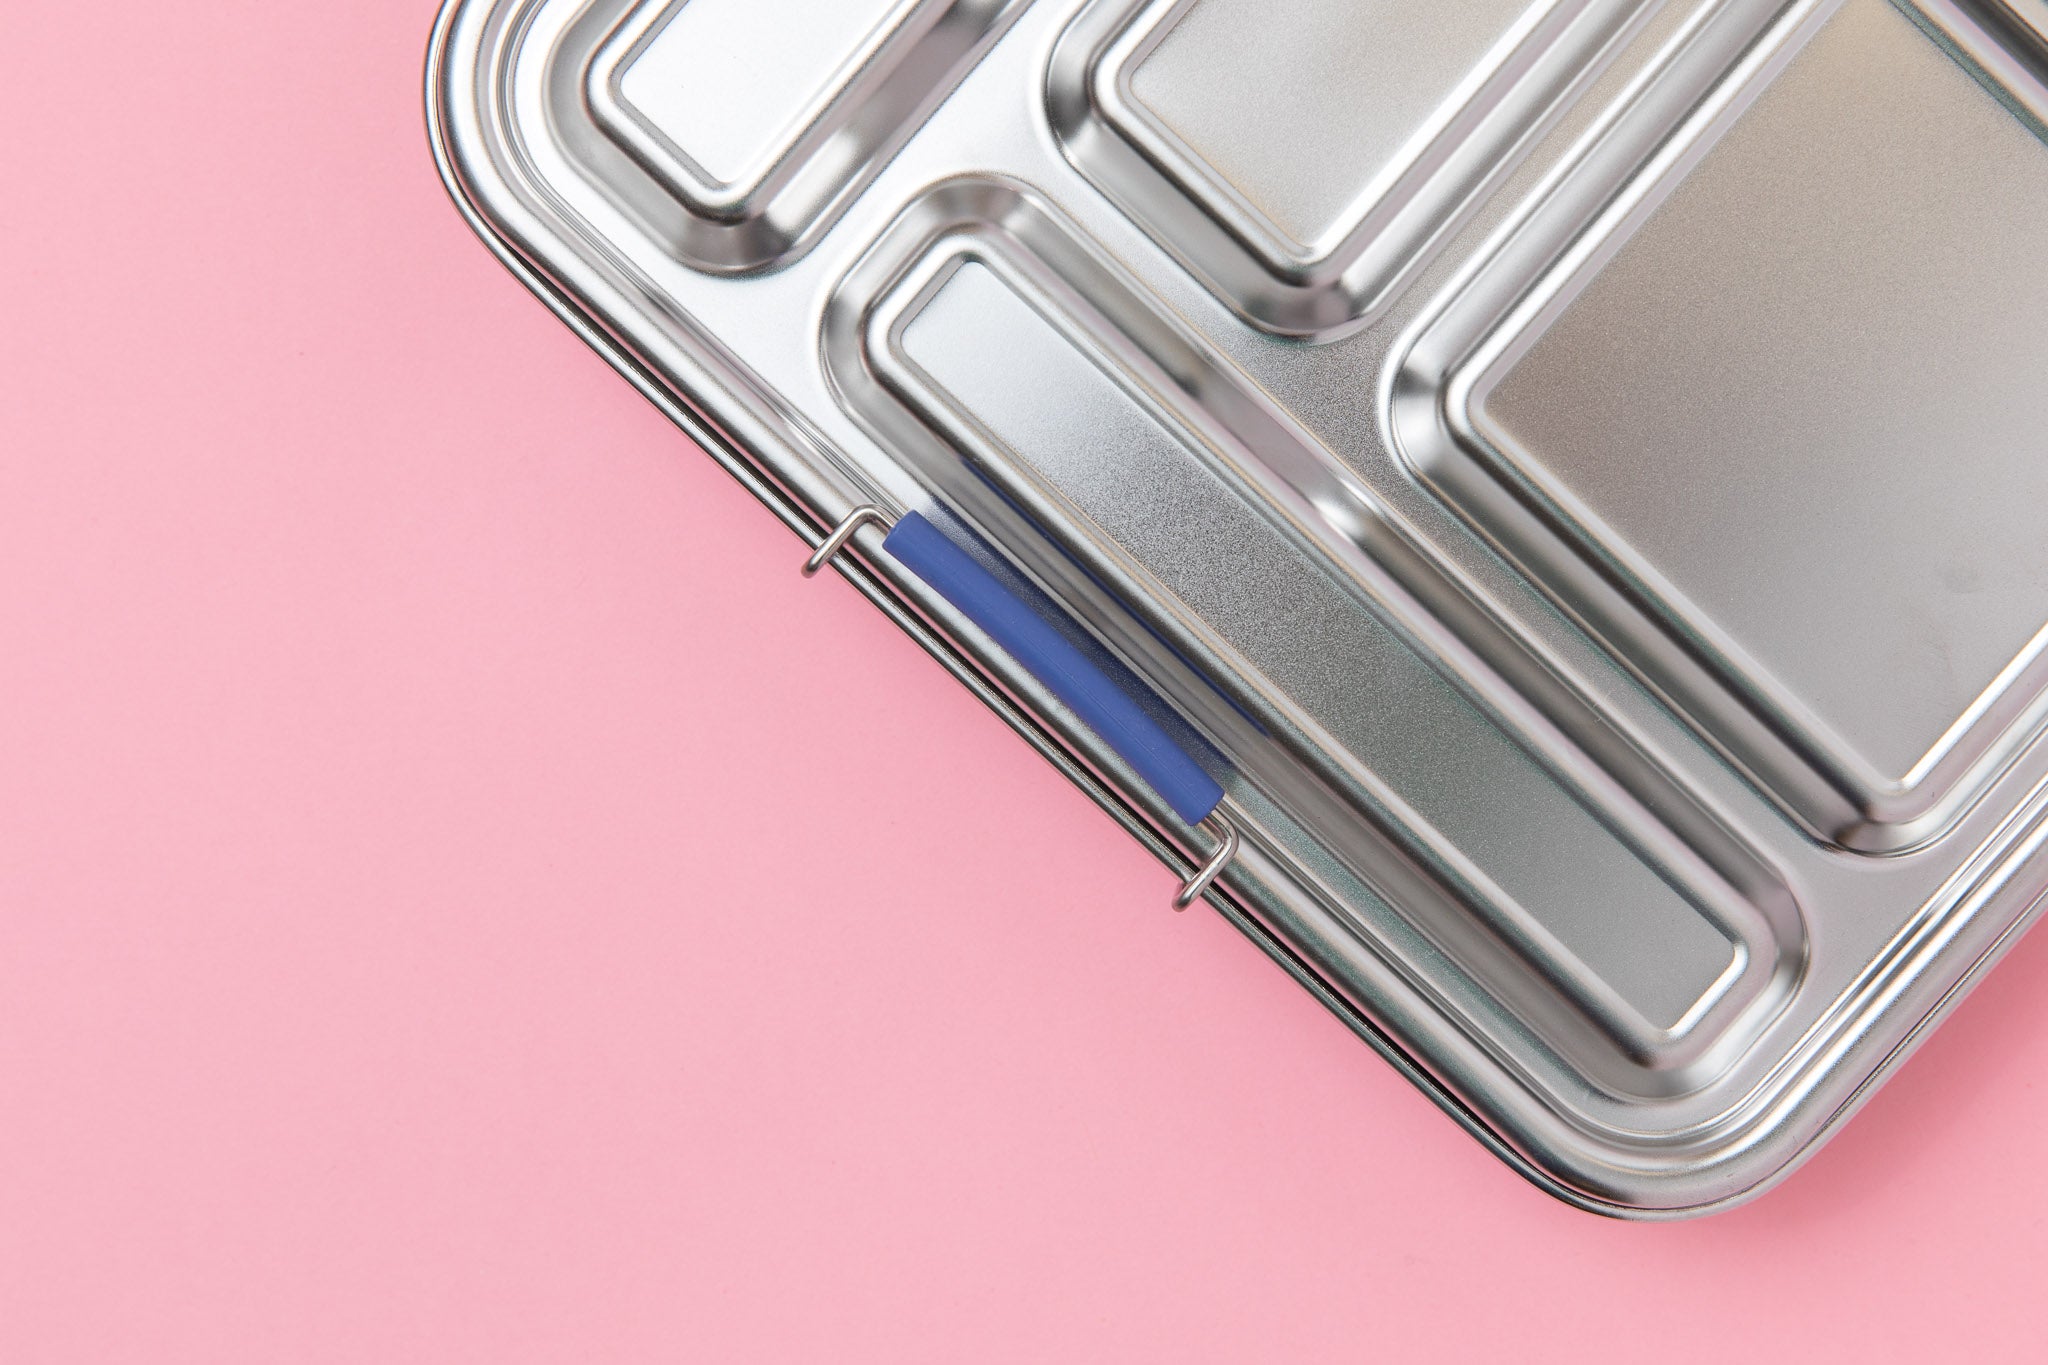 leak proof stainless steel lunch box indigo - nudie rudie lunch box